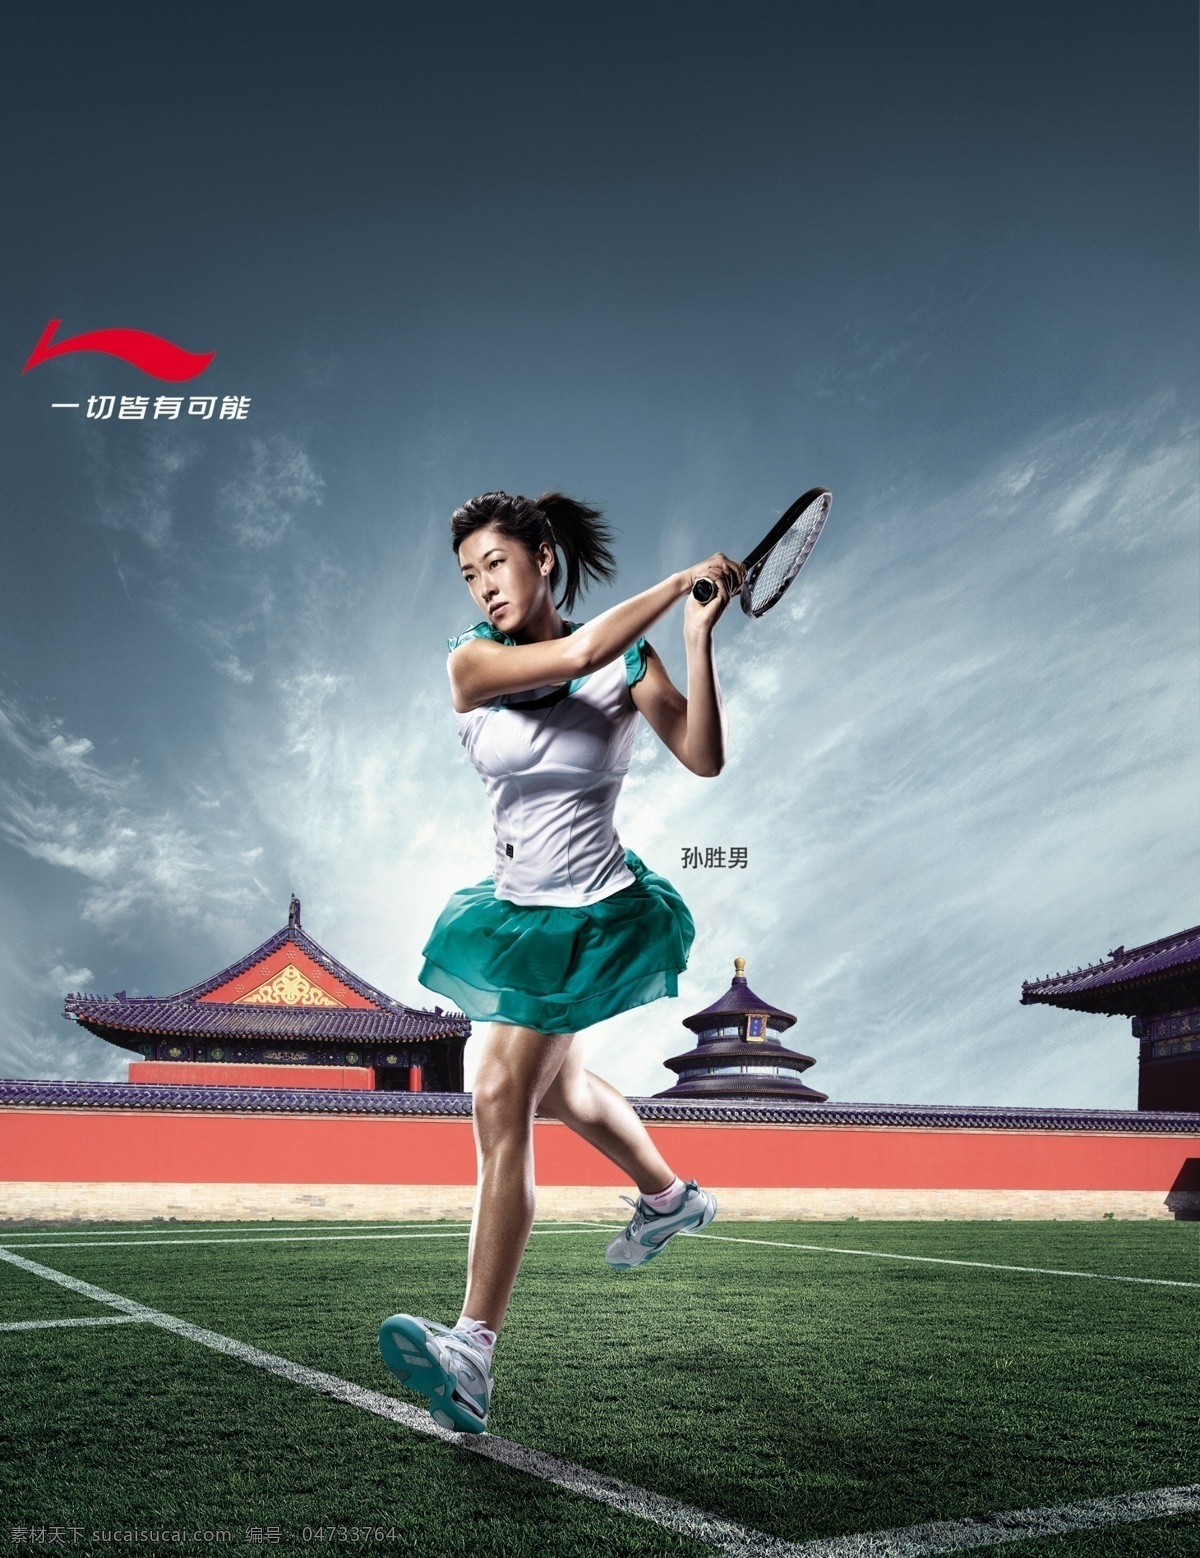 李宁 系列 网球 服 海报 李宁系列 一切皆有可能 网球服 海报模板 海报素材 海报下载 源文件